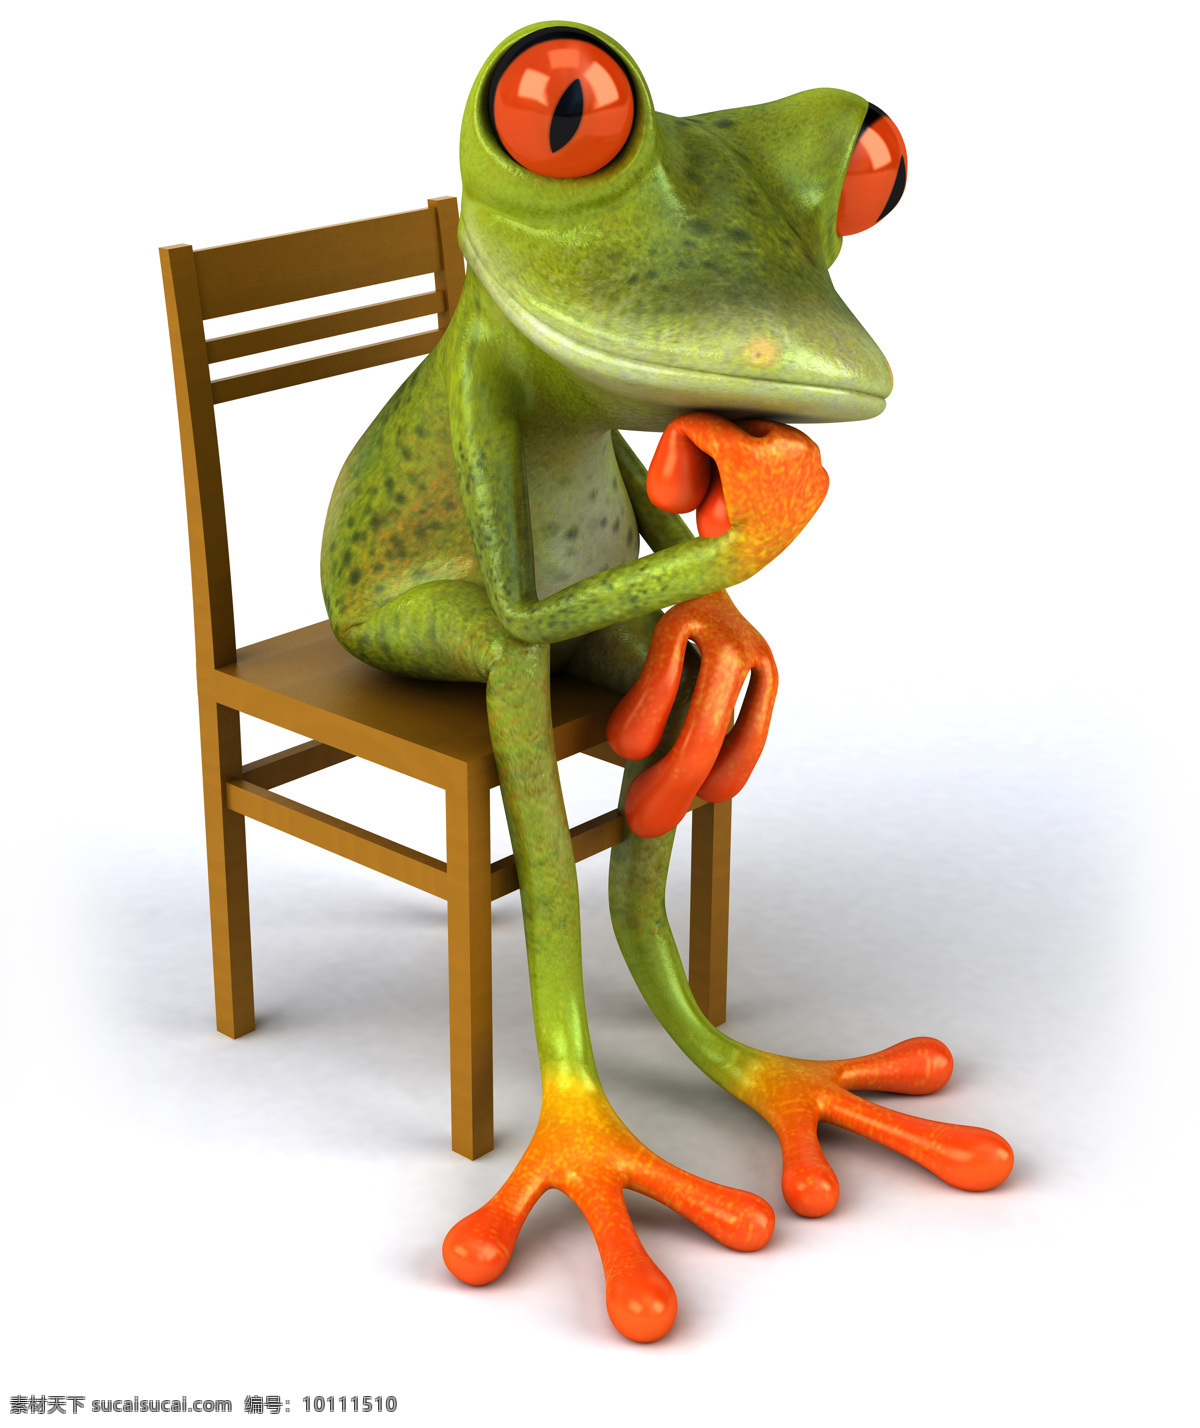 坐在 椅子 上 沉思 青蛙 卡通青蛙 3d青蛙 3d卡通 卡通动物 其他类别 生活百科